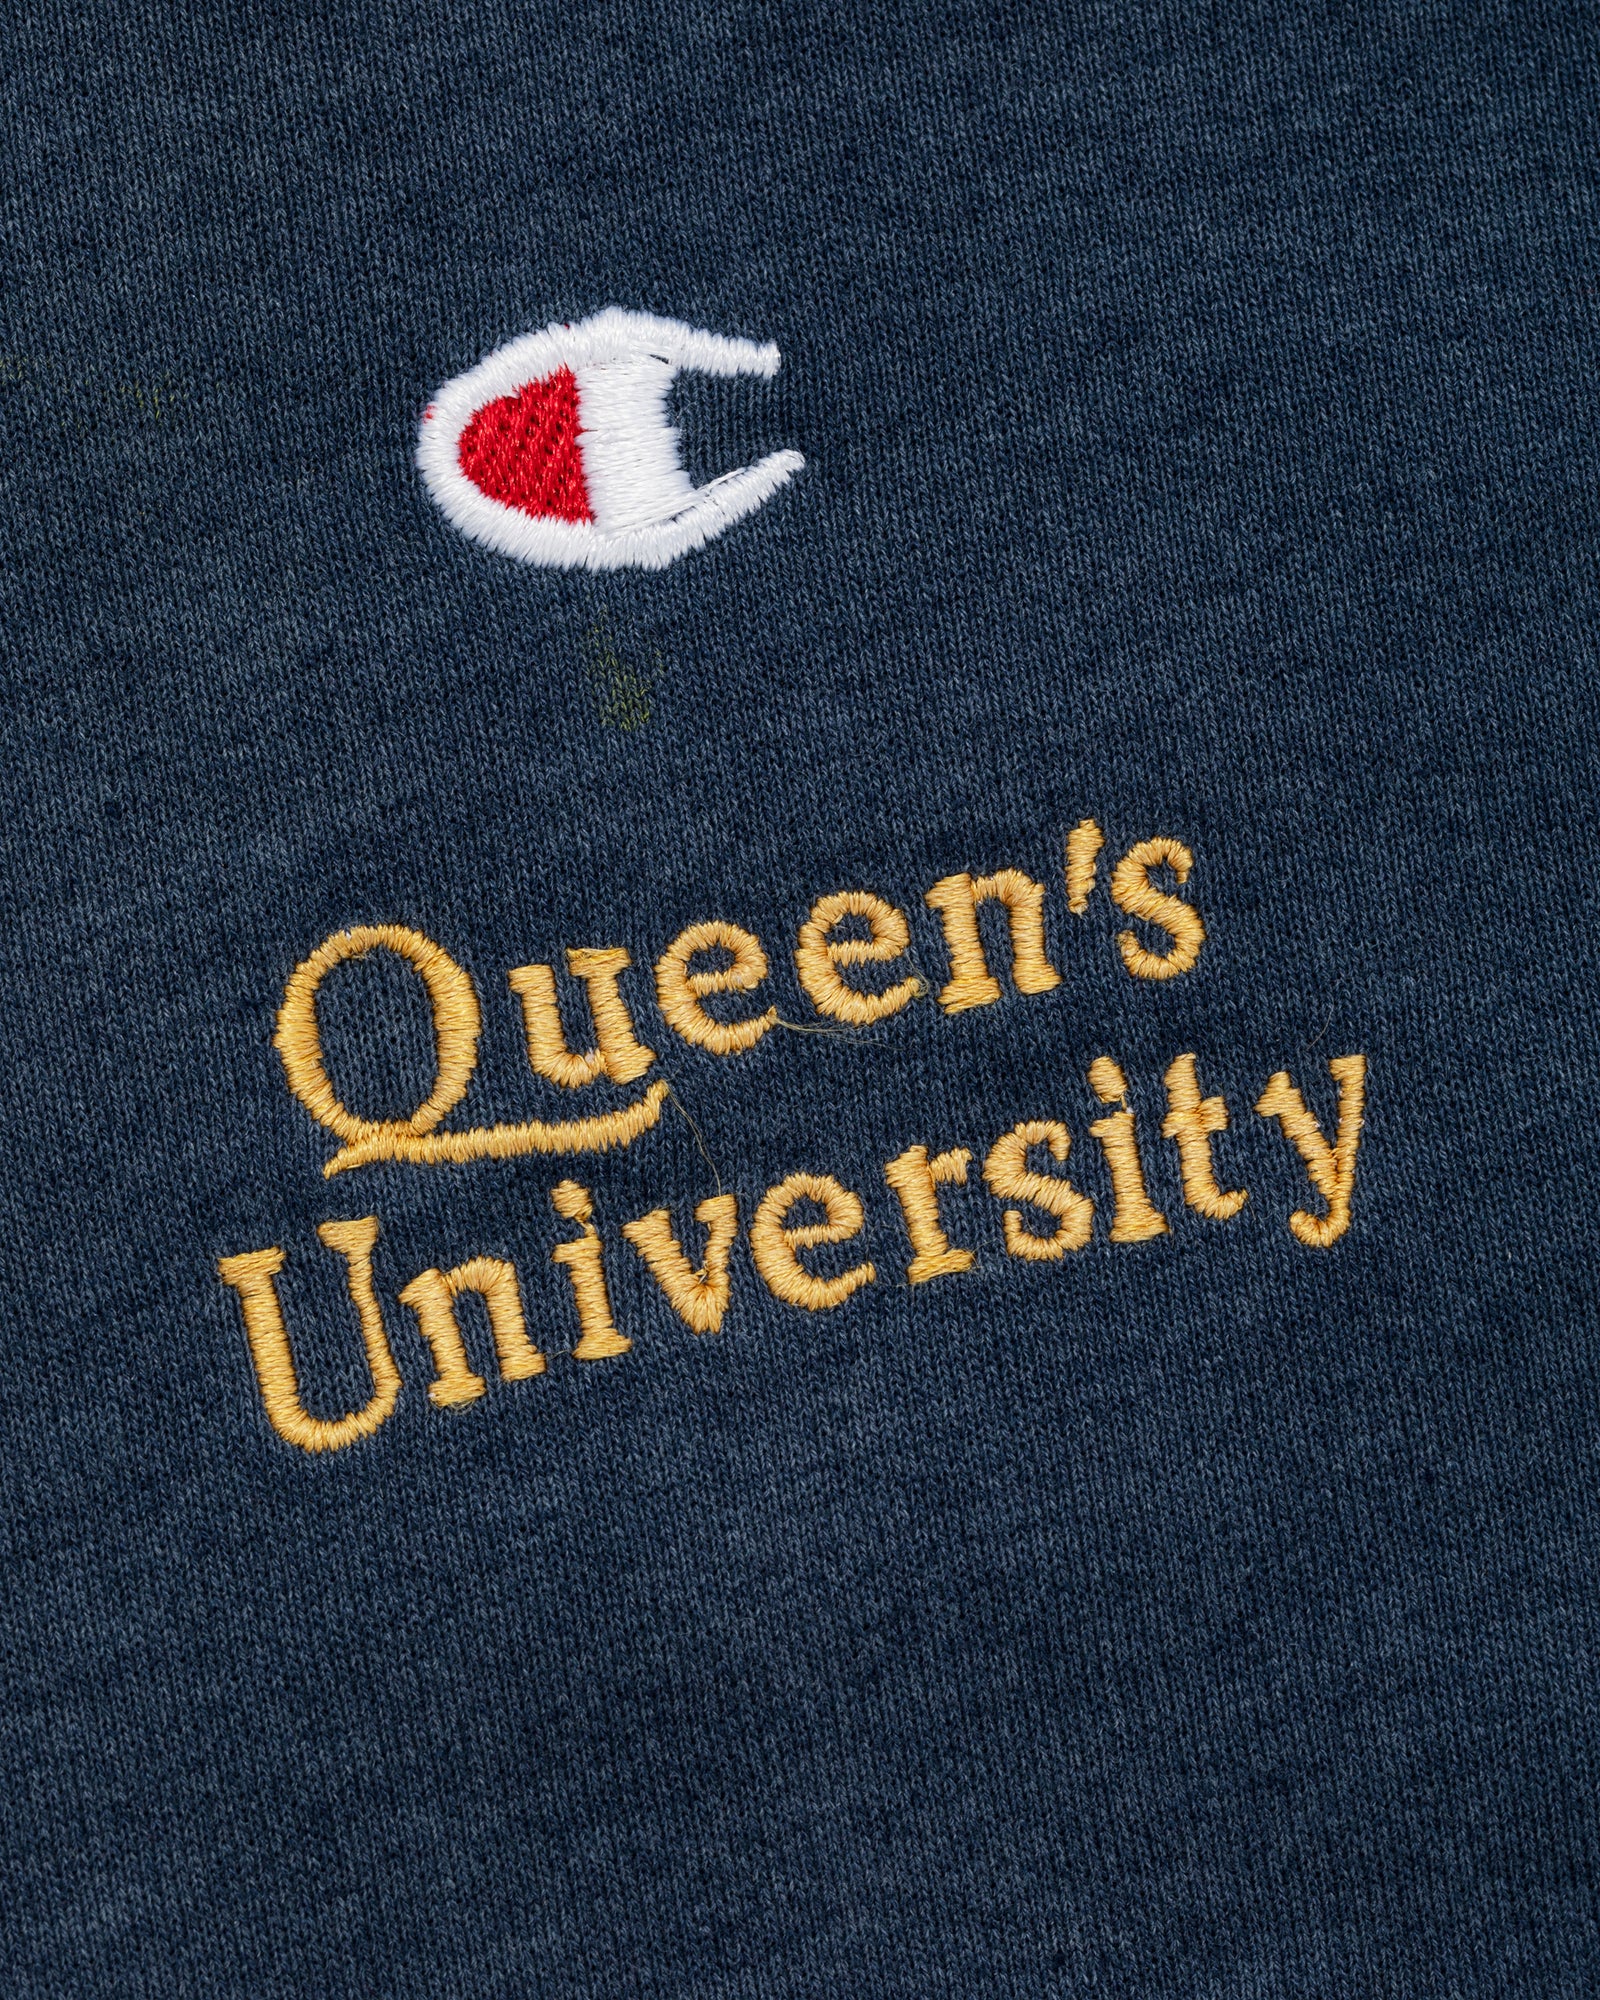 Vintage Queens University Sweatshirt